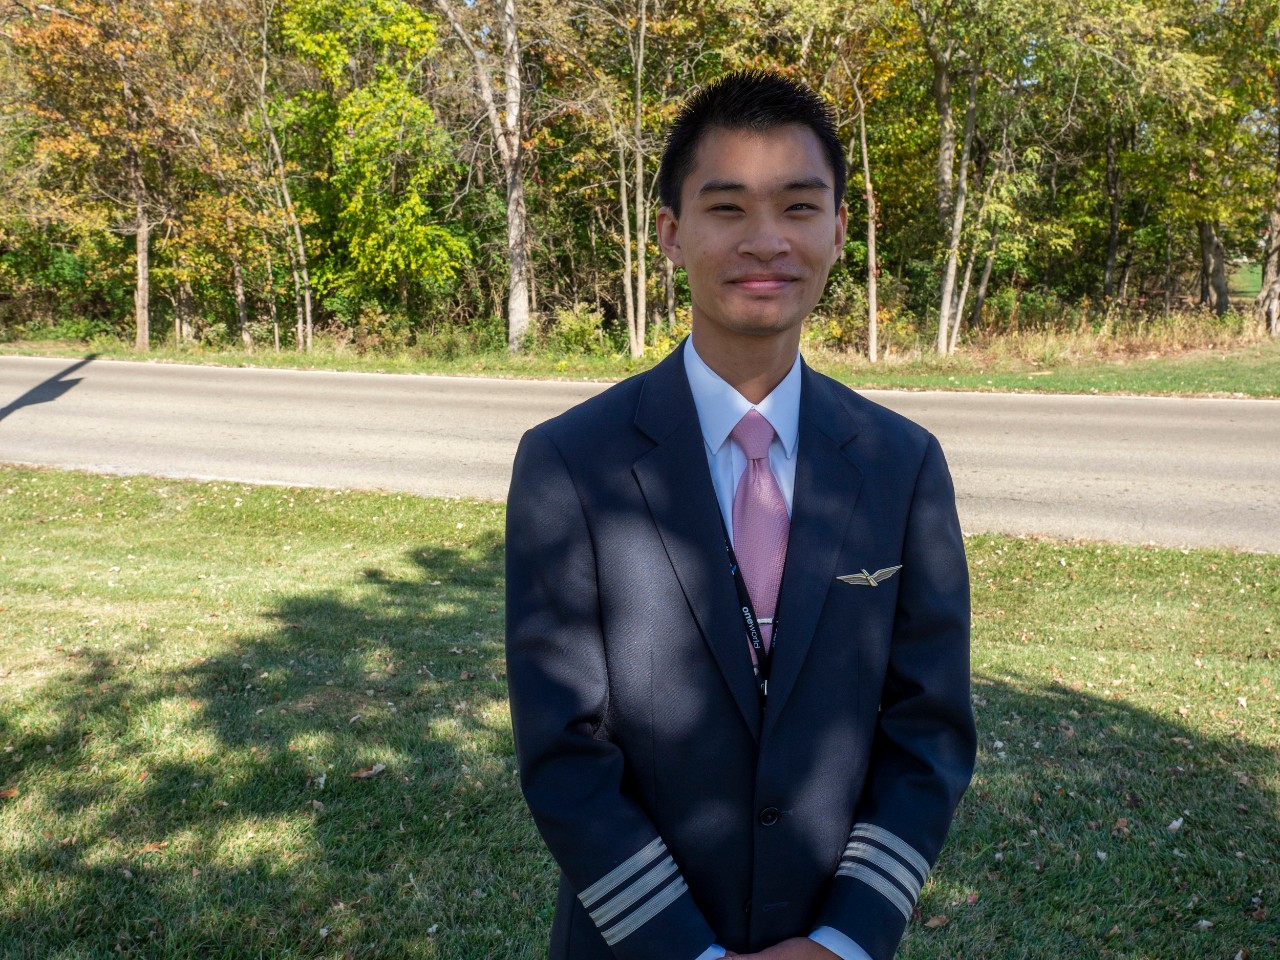 UC Clermont grad Alan Nguyen poses in his pilot uniform